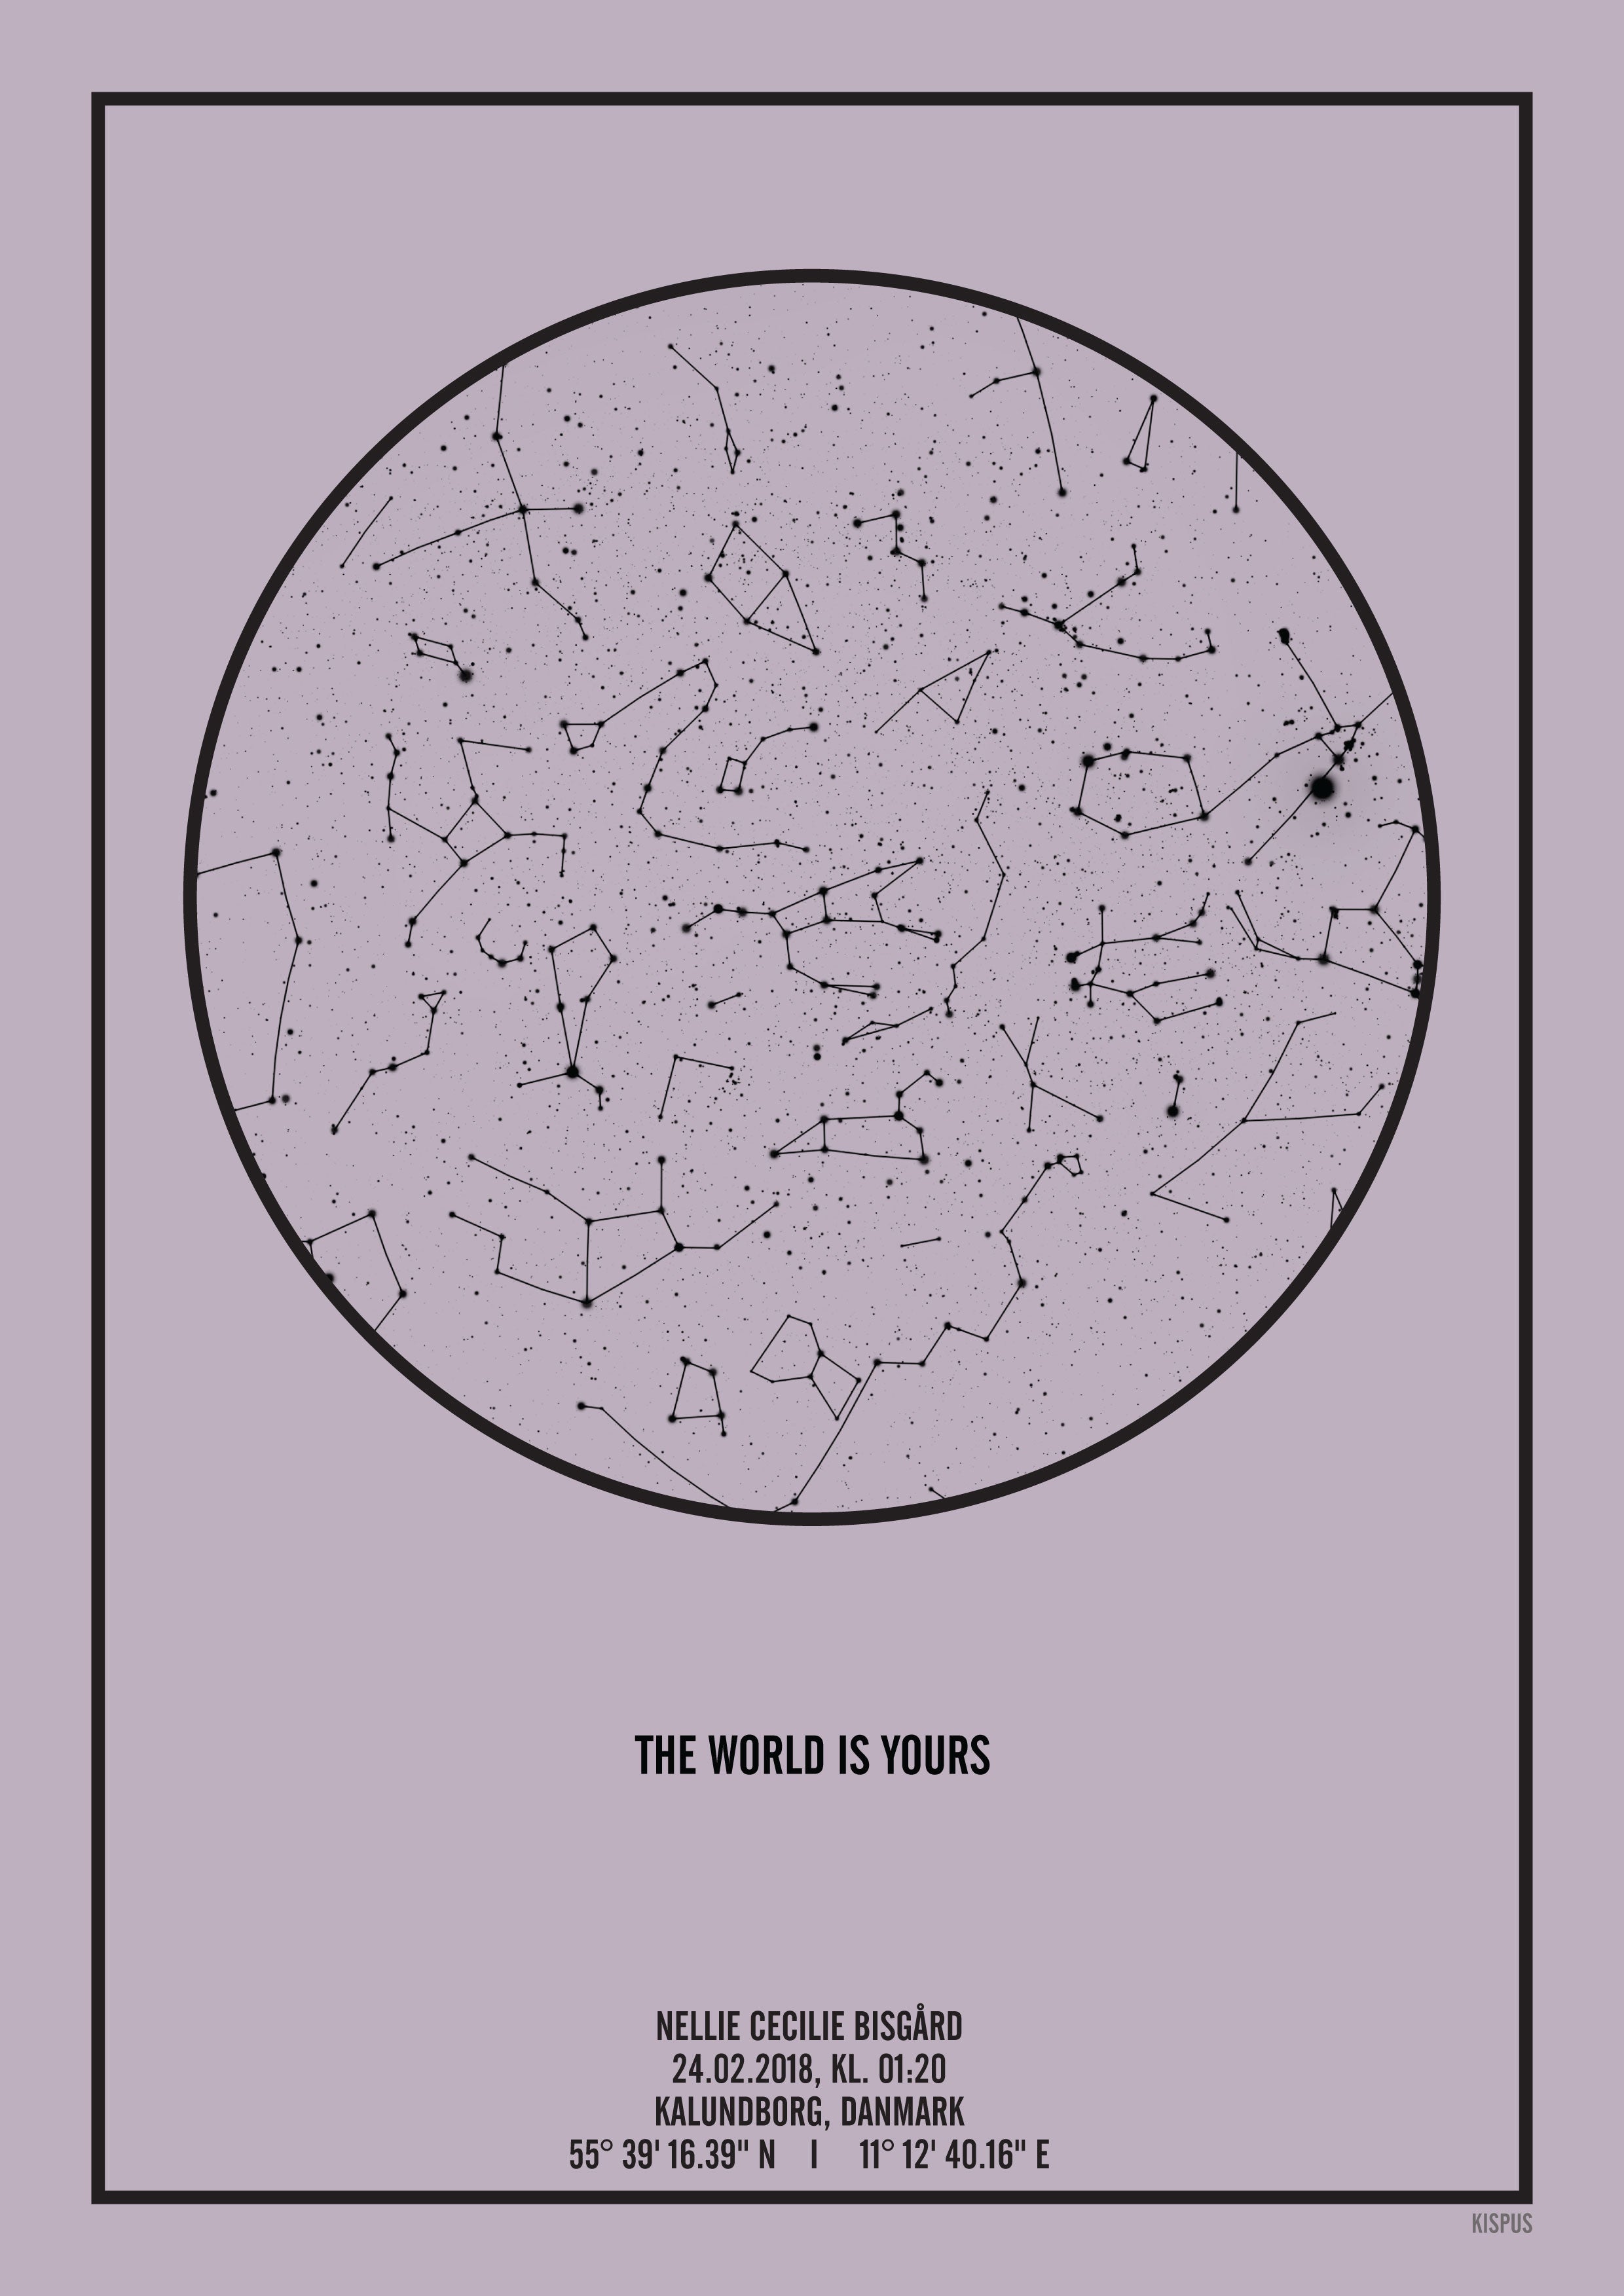 Se PERSONLIG STJERNEHIMMEL PLAKAT (LYSELILLA) - 30x40 / Sort tekst og lyselilla stjernehimmel / Stjernehimmel med stjernebilleder hos KISPUS